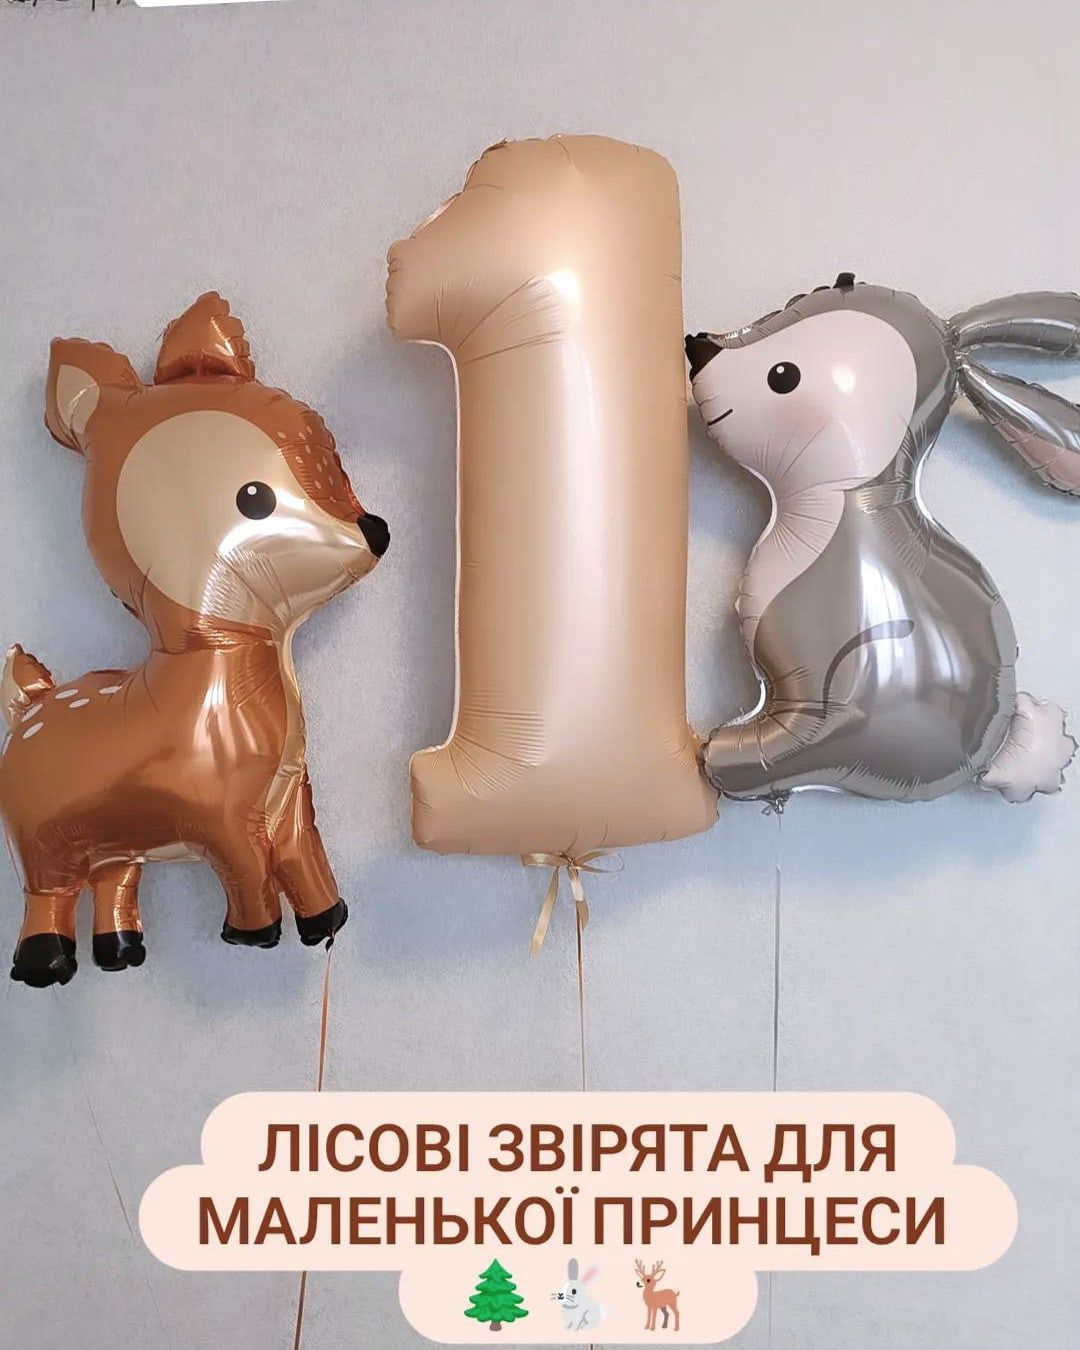 Воздушные шары Повітряні кульки гелієві Косиора, Слобожанский